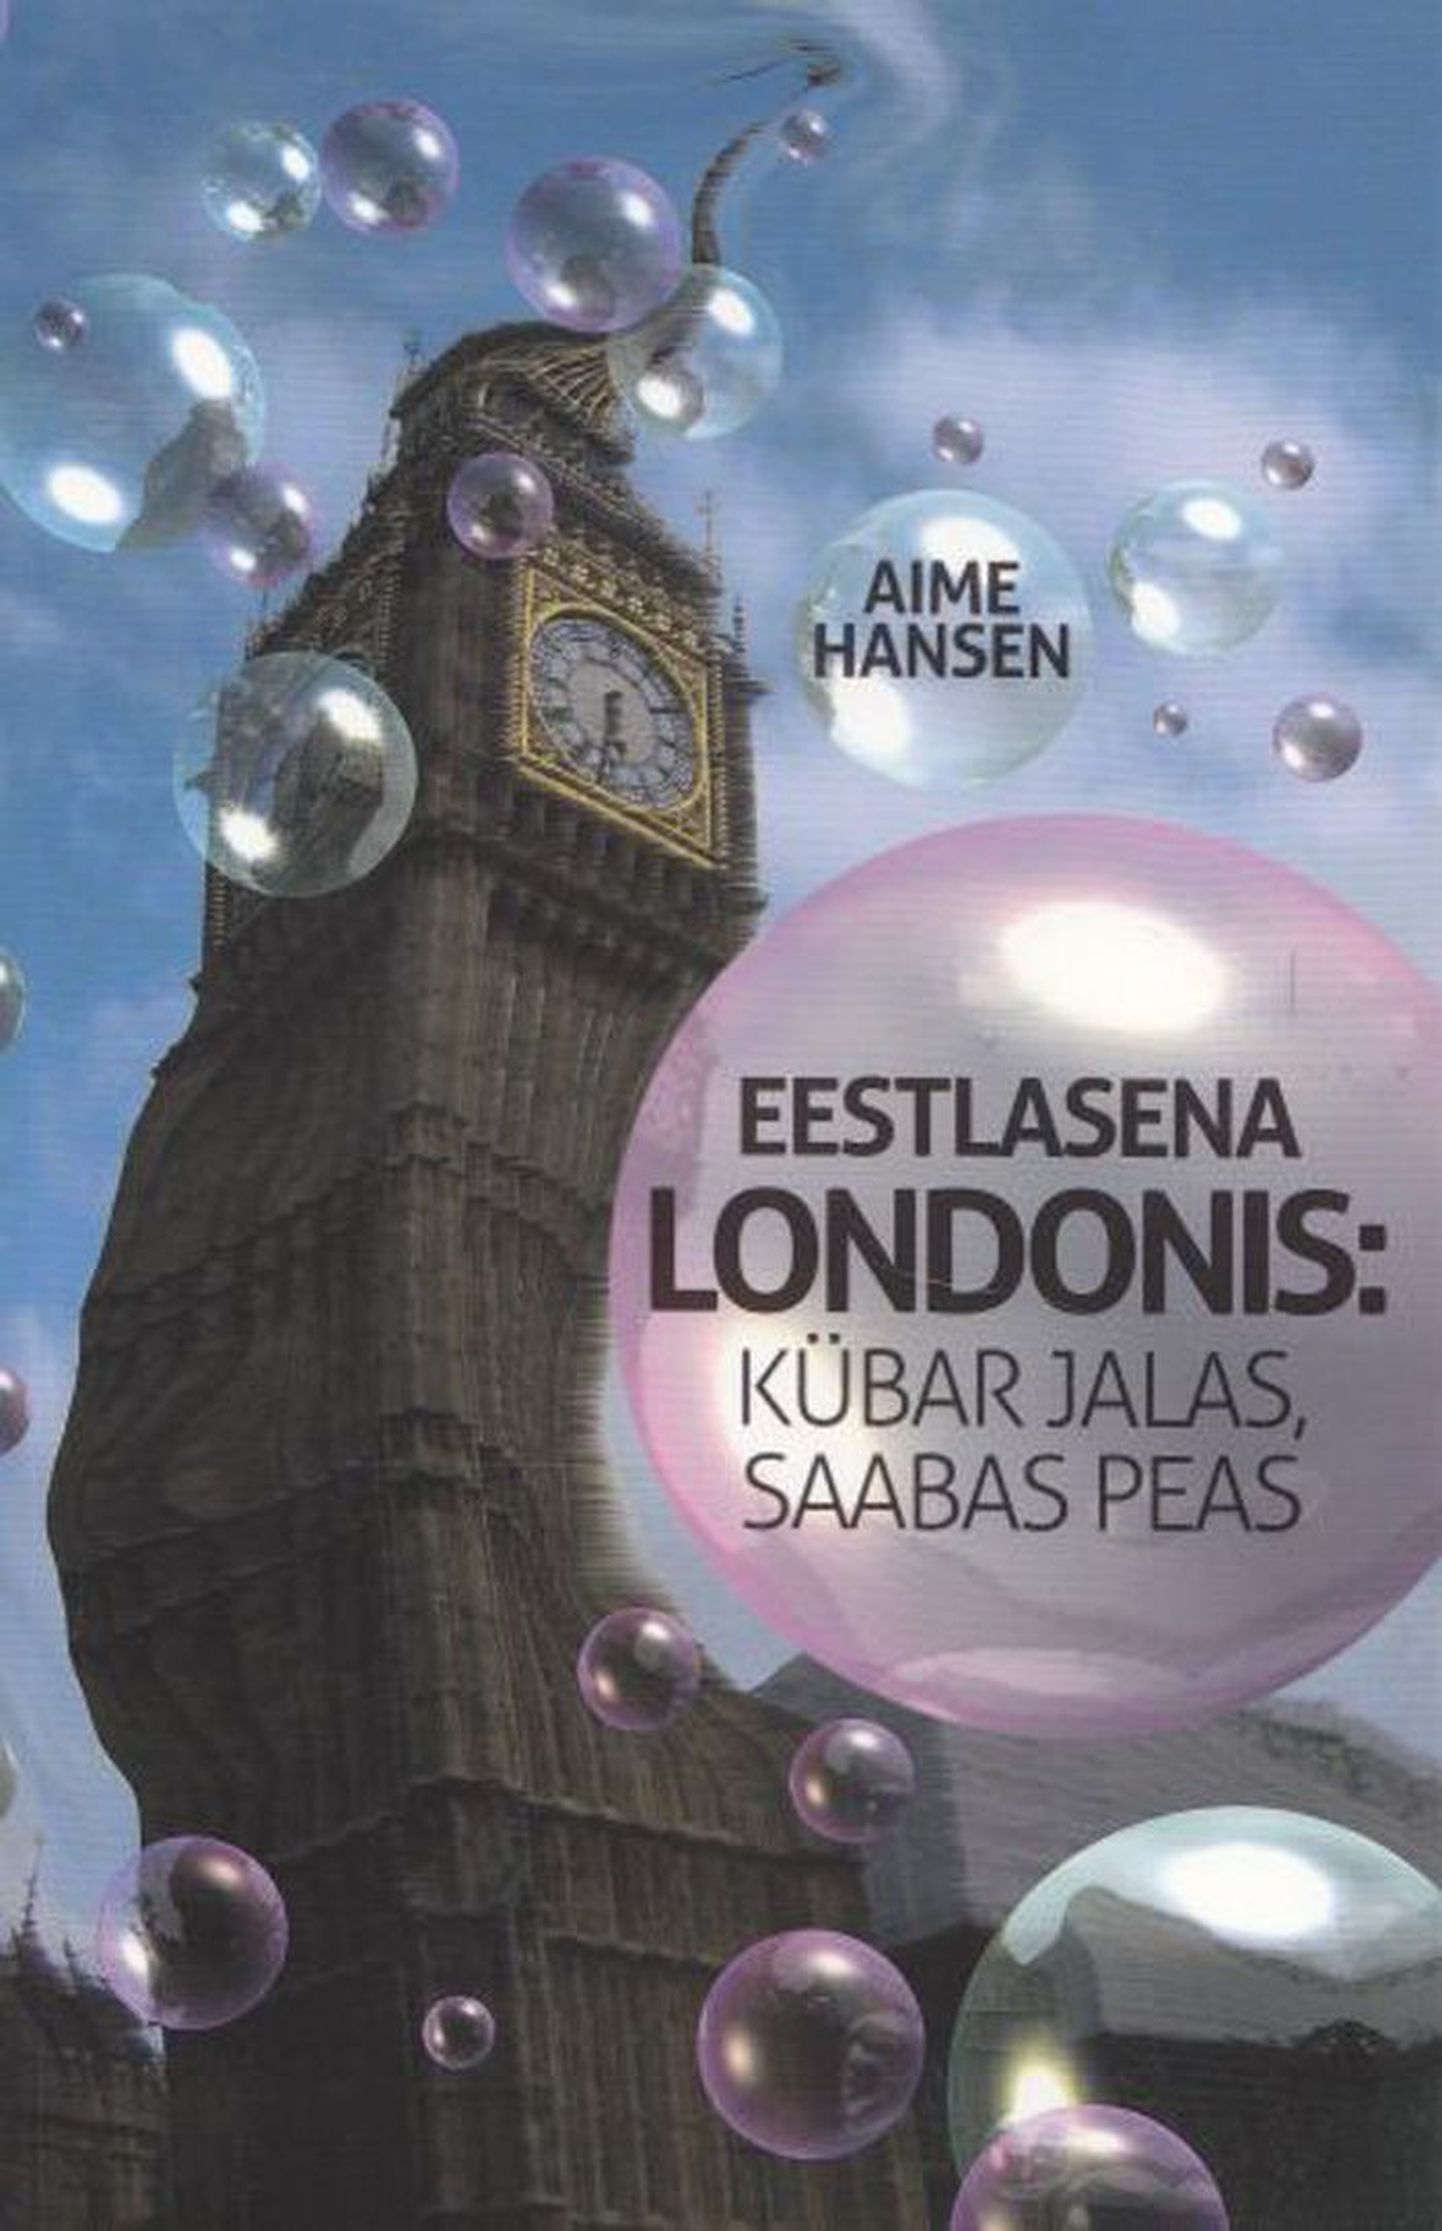 Raamat

Aime Hansen
«Eestlasena Londonis: kübar jalas, saabas peas»
Ajakirjade
Kirjastus
2011, 292 lk